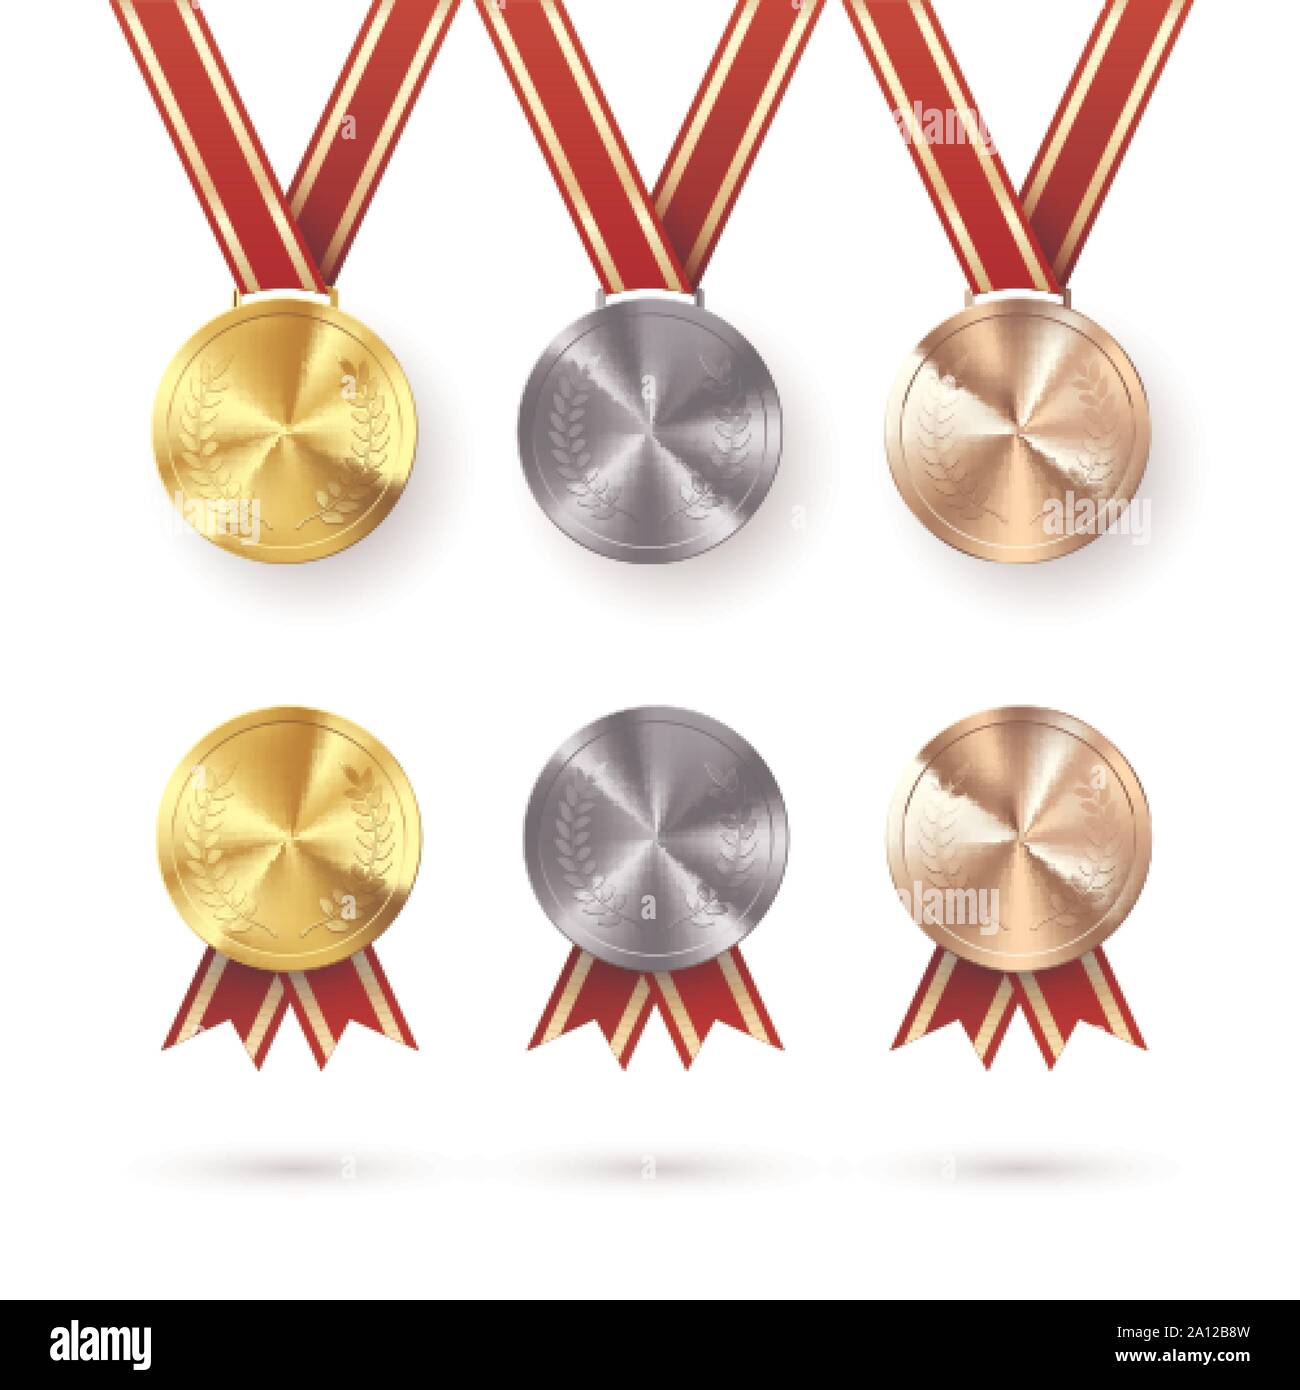 Reihe von Auszeichnungen. Golden Silber- und Bronzemedaillen mit Lorbeer am roten Band. Award Symbol für Sieg und Erfolg. Vector Illustration isoliert auf Stock Vektor